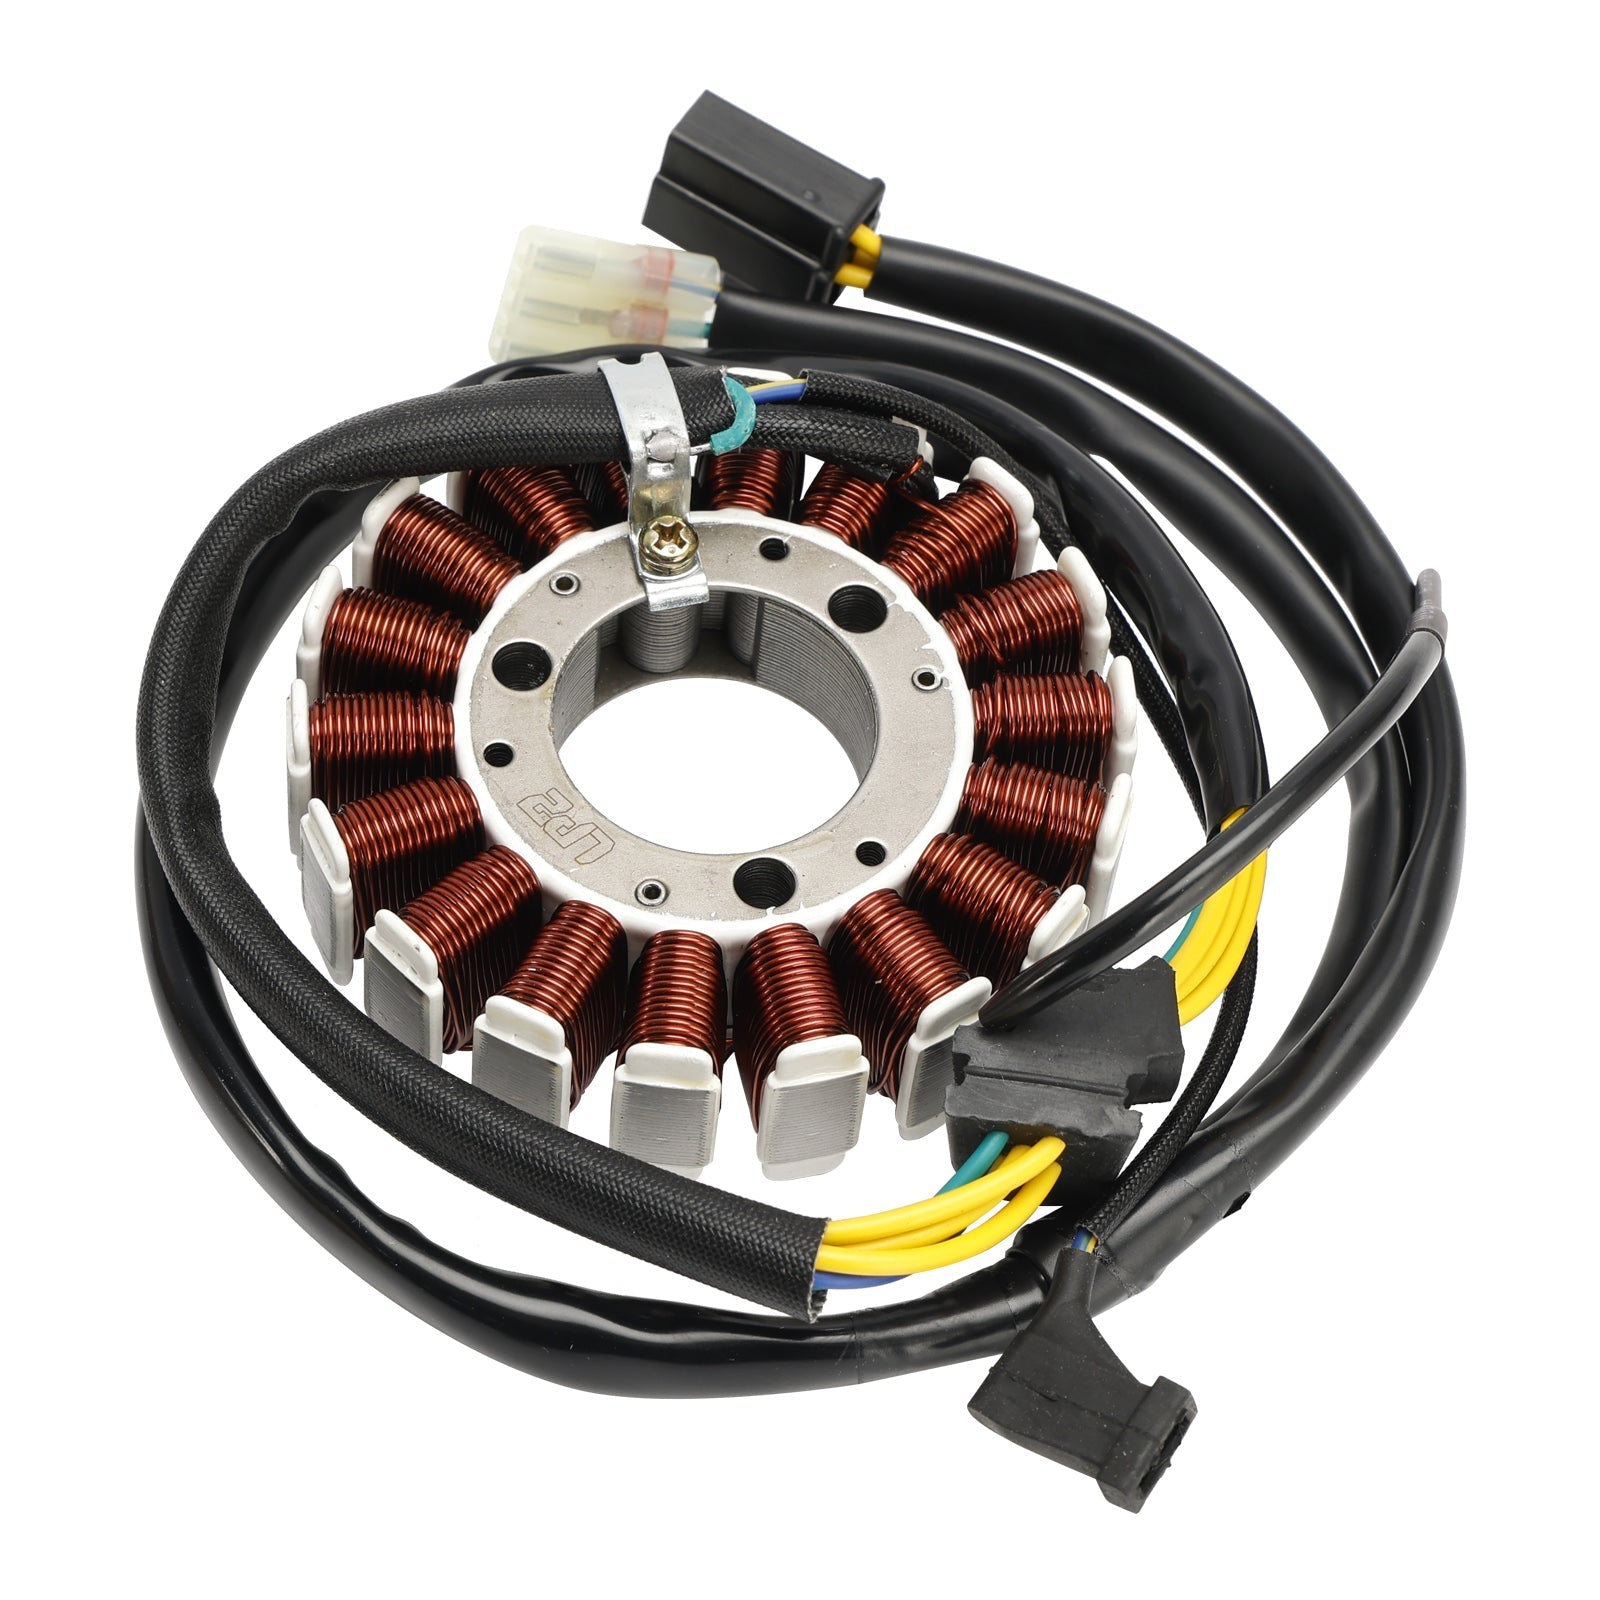 Stator de bobine magnétique Honda XR230 2005-2009 + régulateur de tension + joint Assy 31120-KFB-841